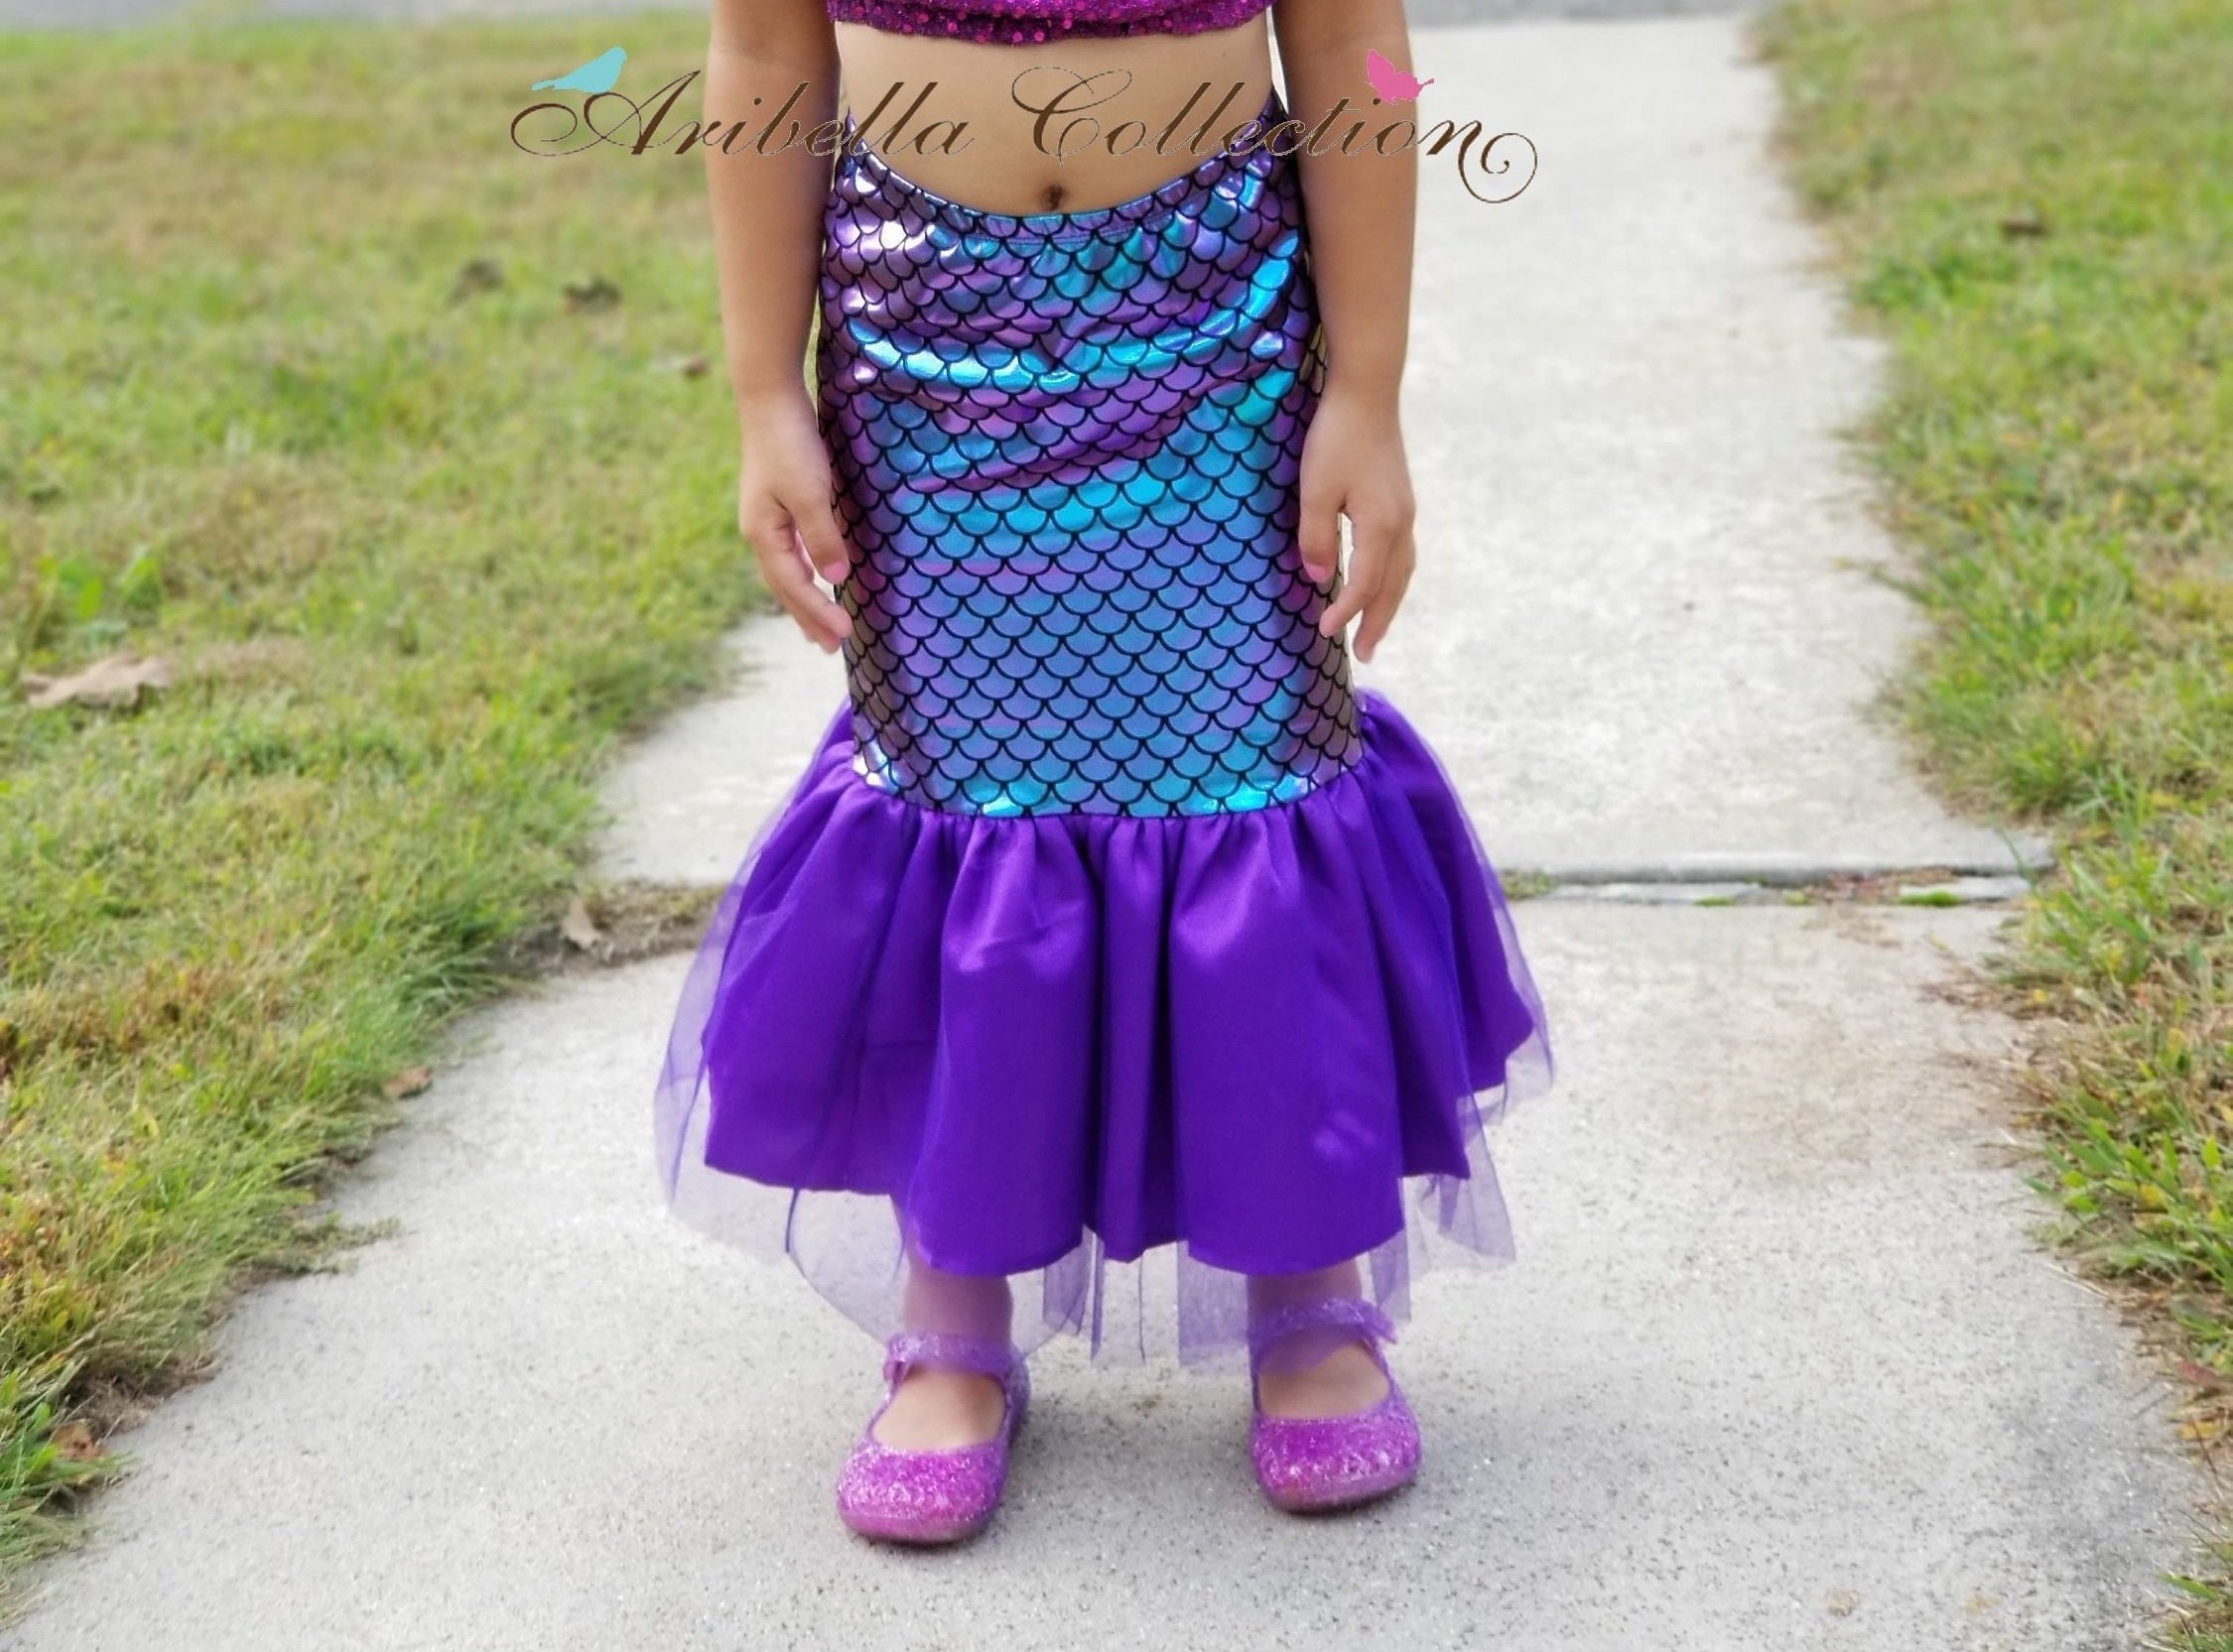 Mermaid Costume; Mermaid tail skirt Kleding Meisjeskleding Verkleden 